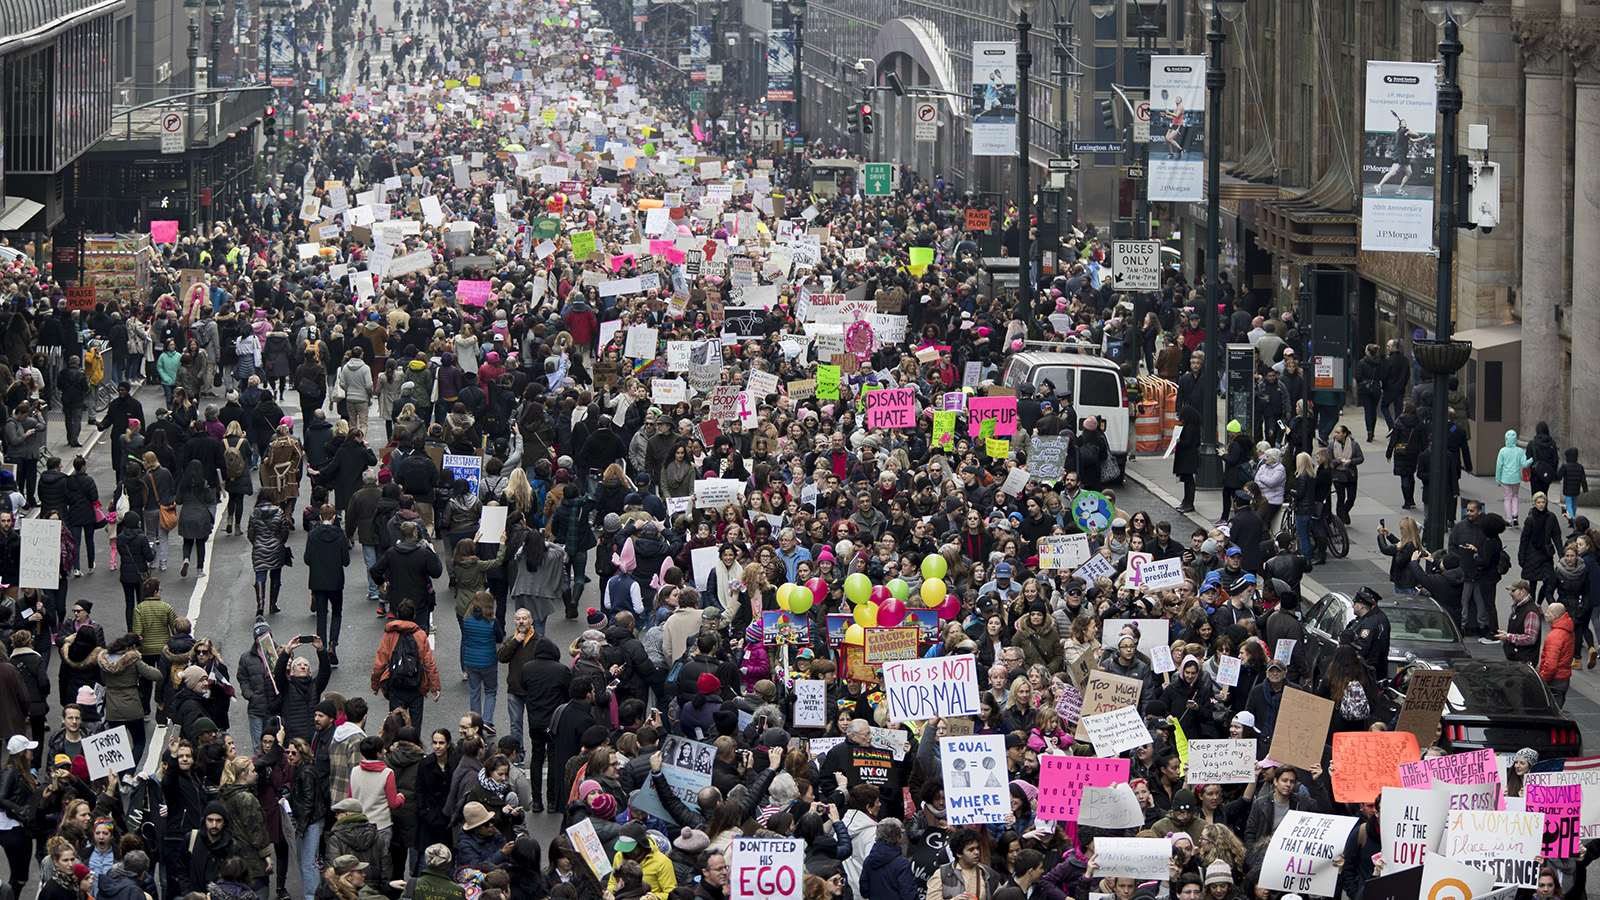 אלפים צועדים ברחוב 42 בניו יורק במהלך המחאה. (צילום: Mary Altaffer Q / סוכנות AP).